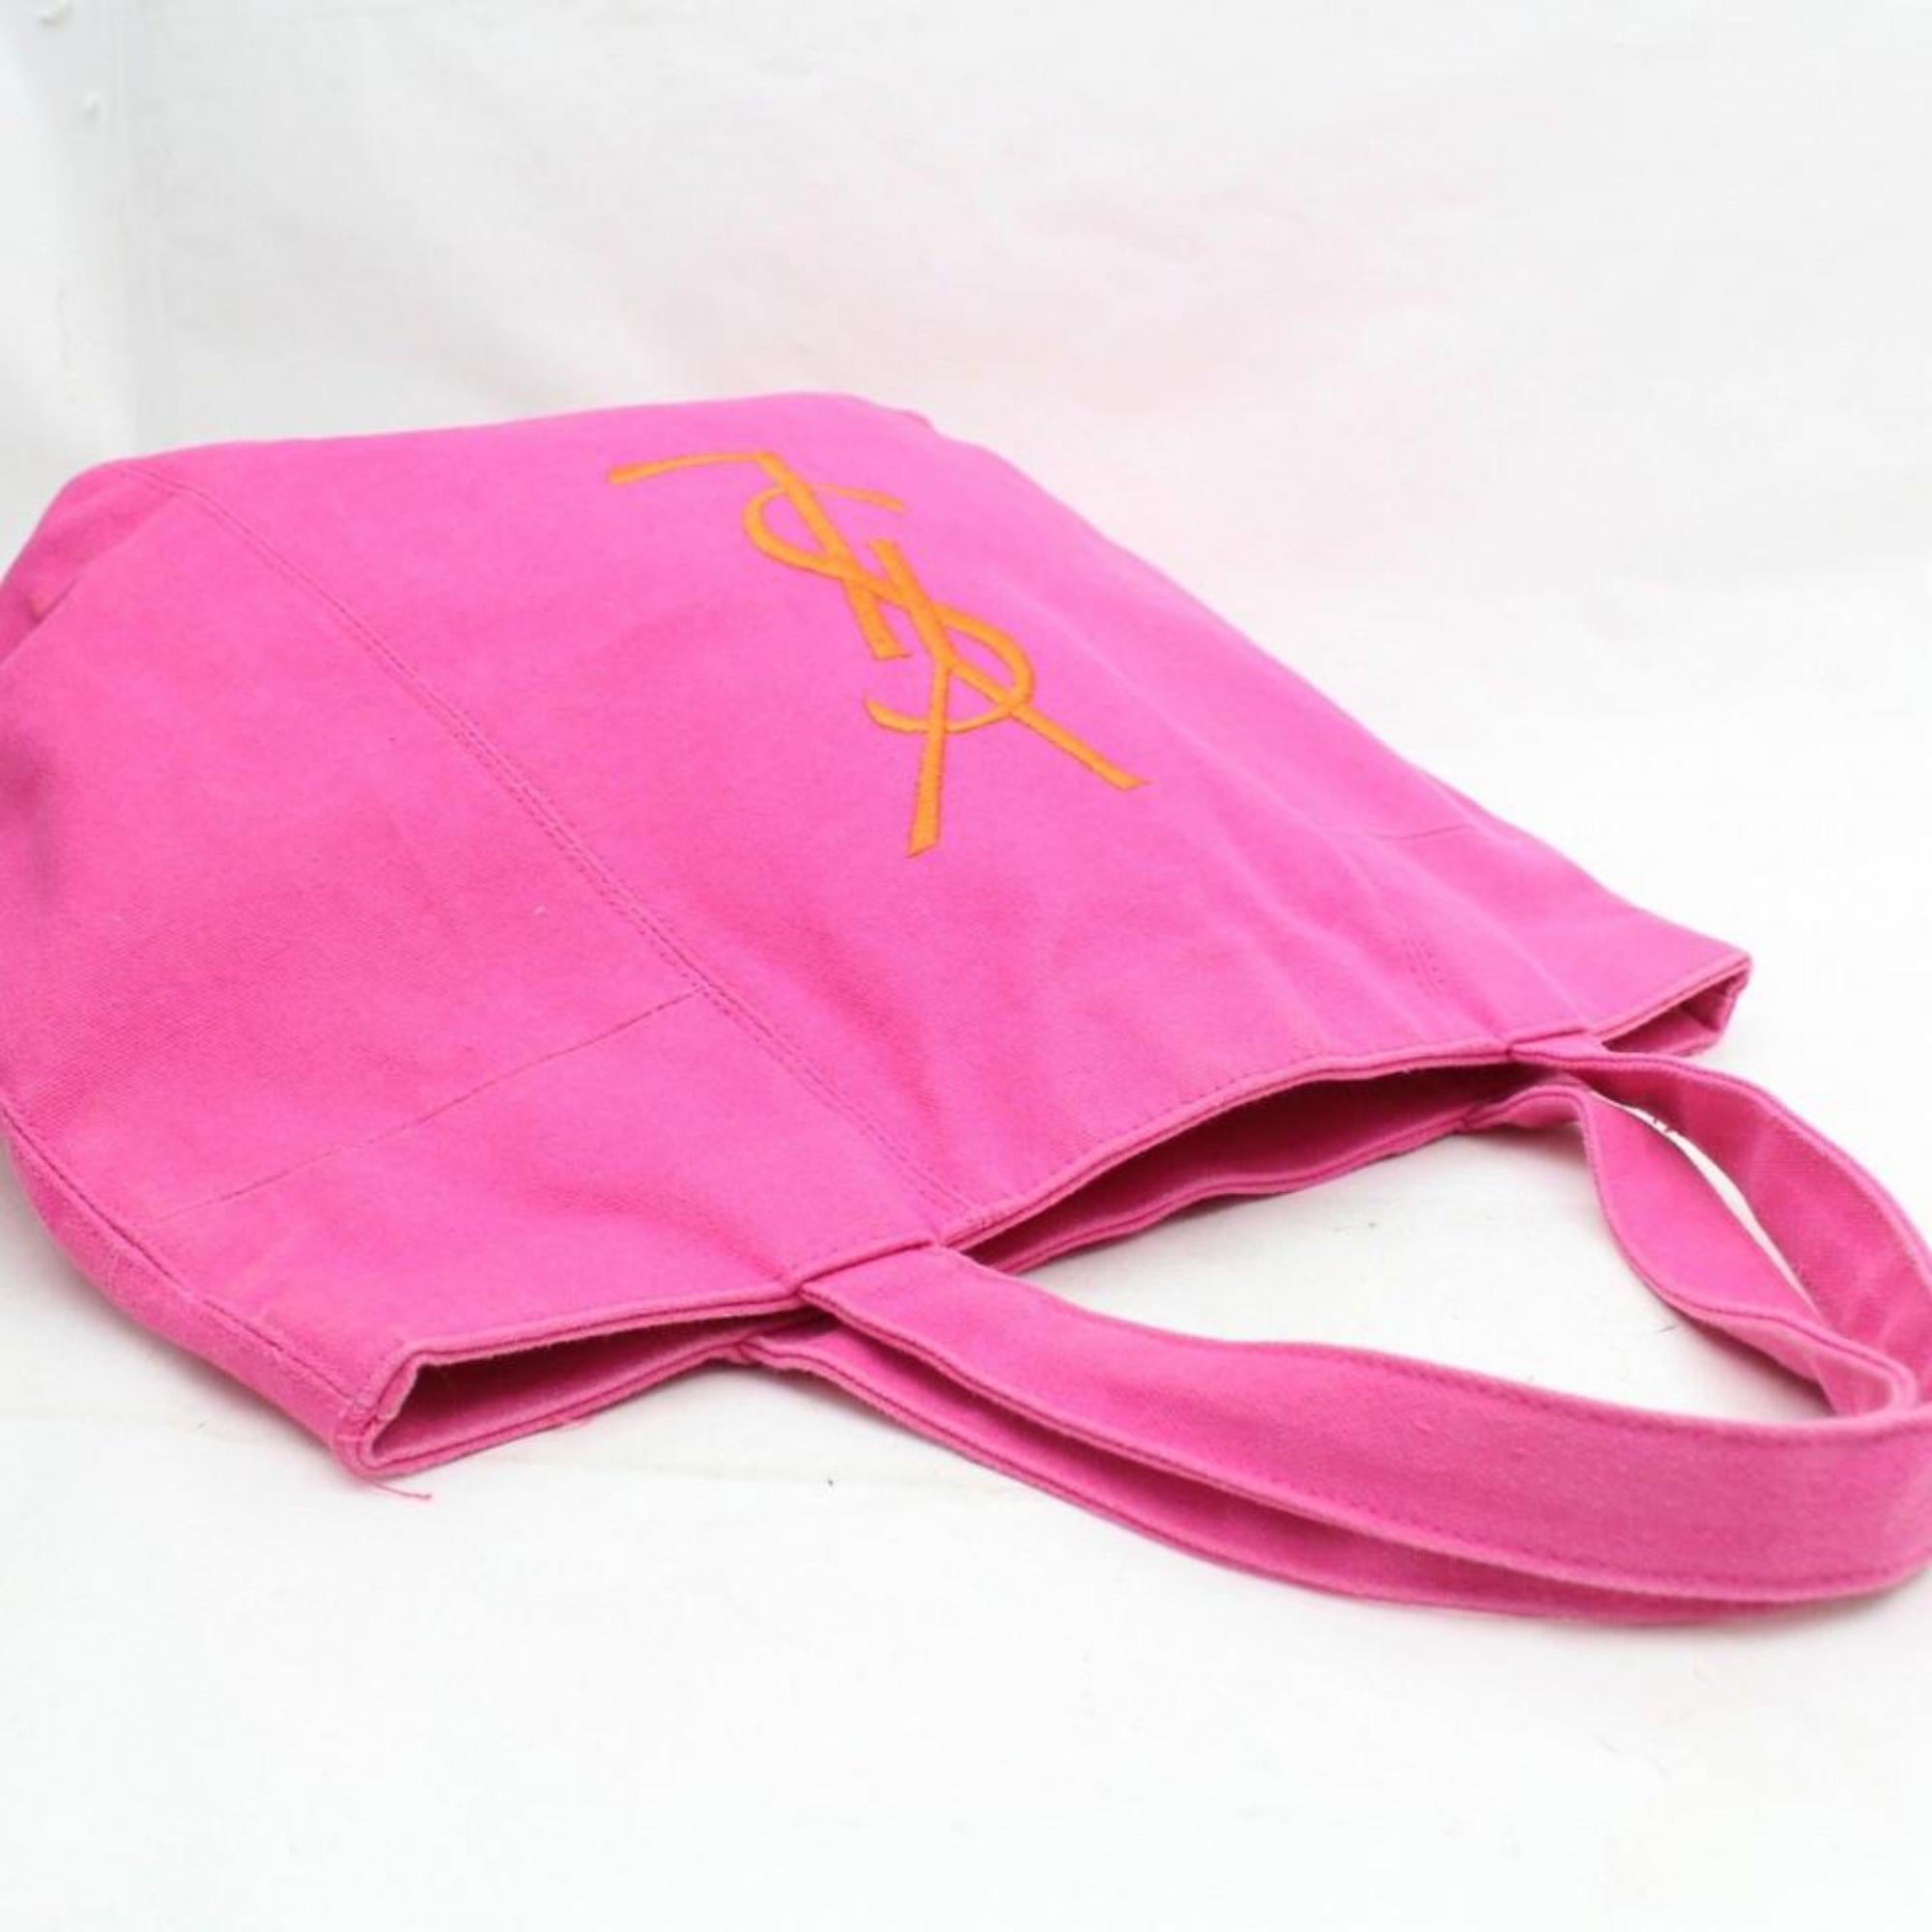 Saint Laurent Shopping Bag Parfums Edition Shopper 869749 Pink Canvas Tote For Sale 1